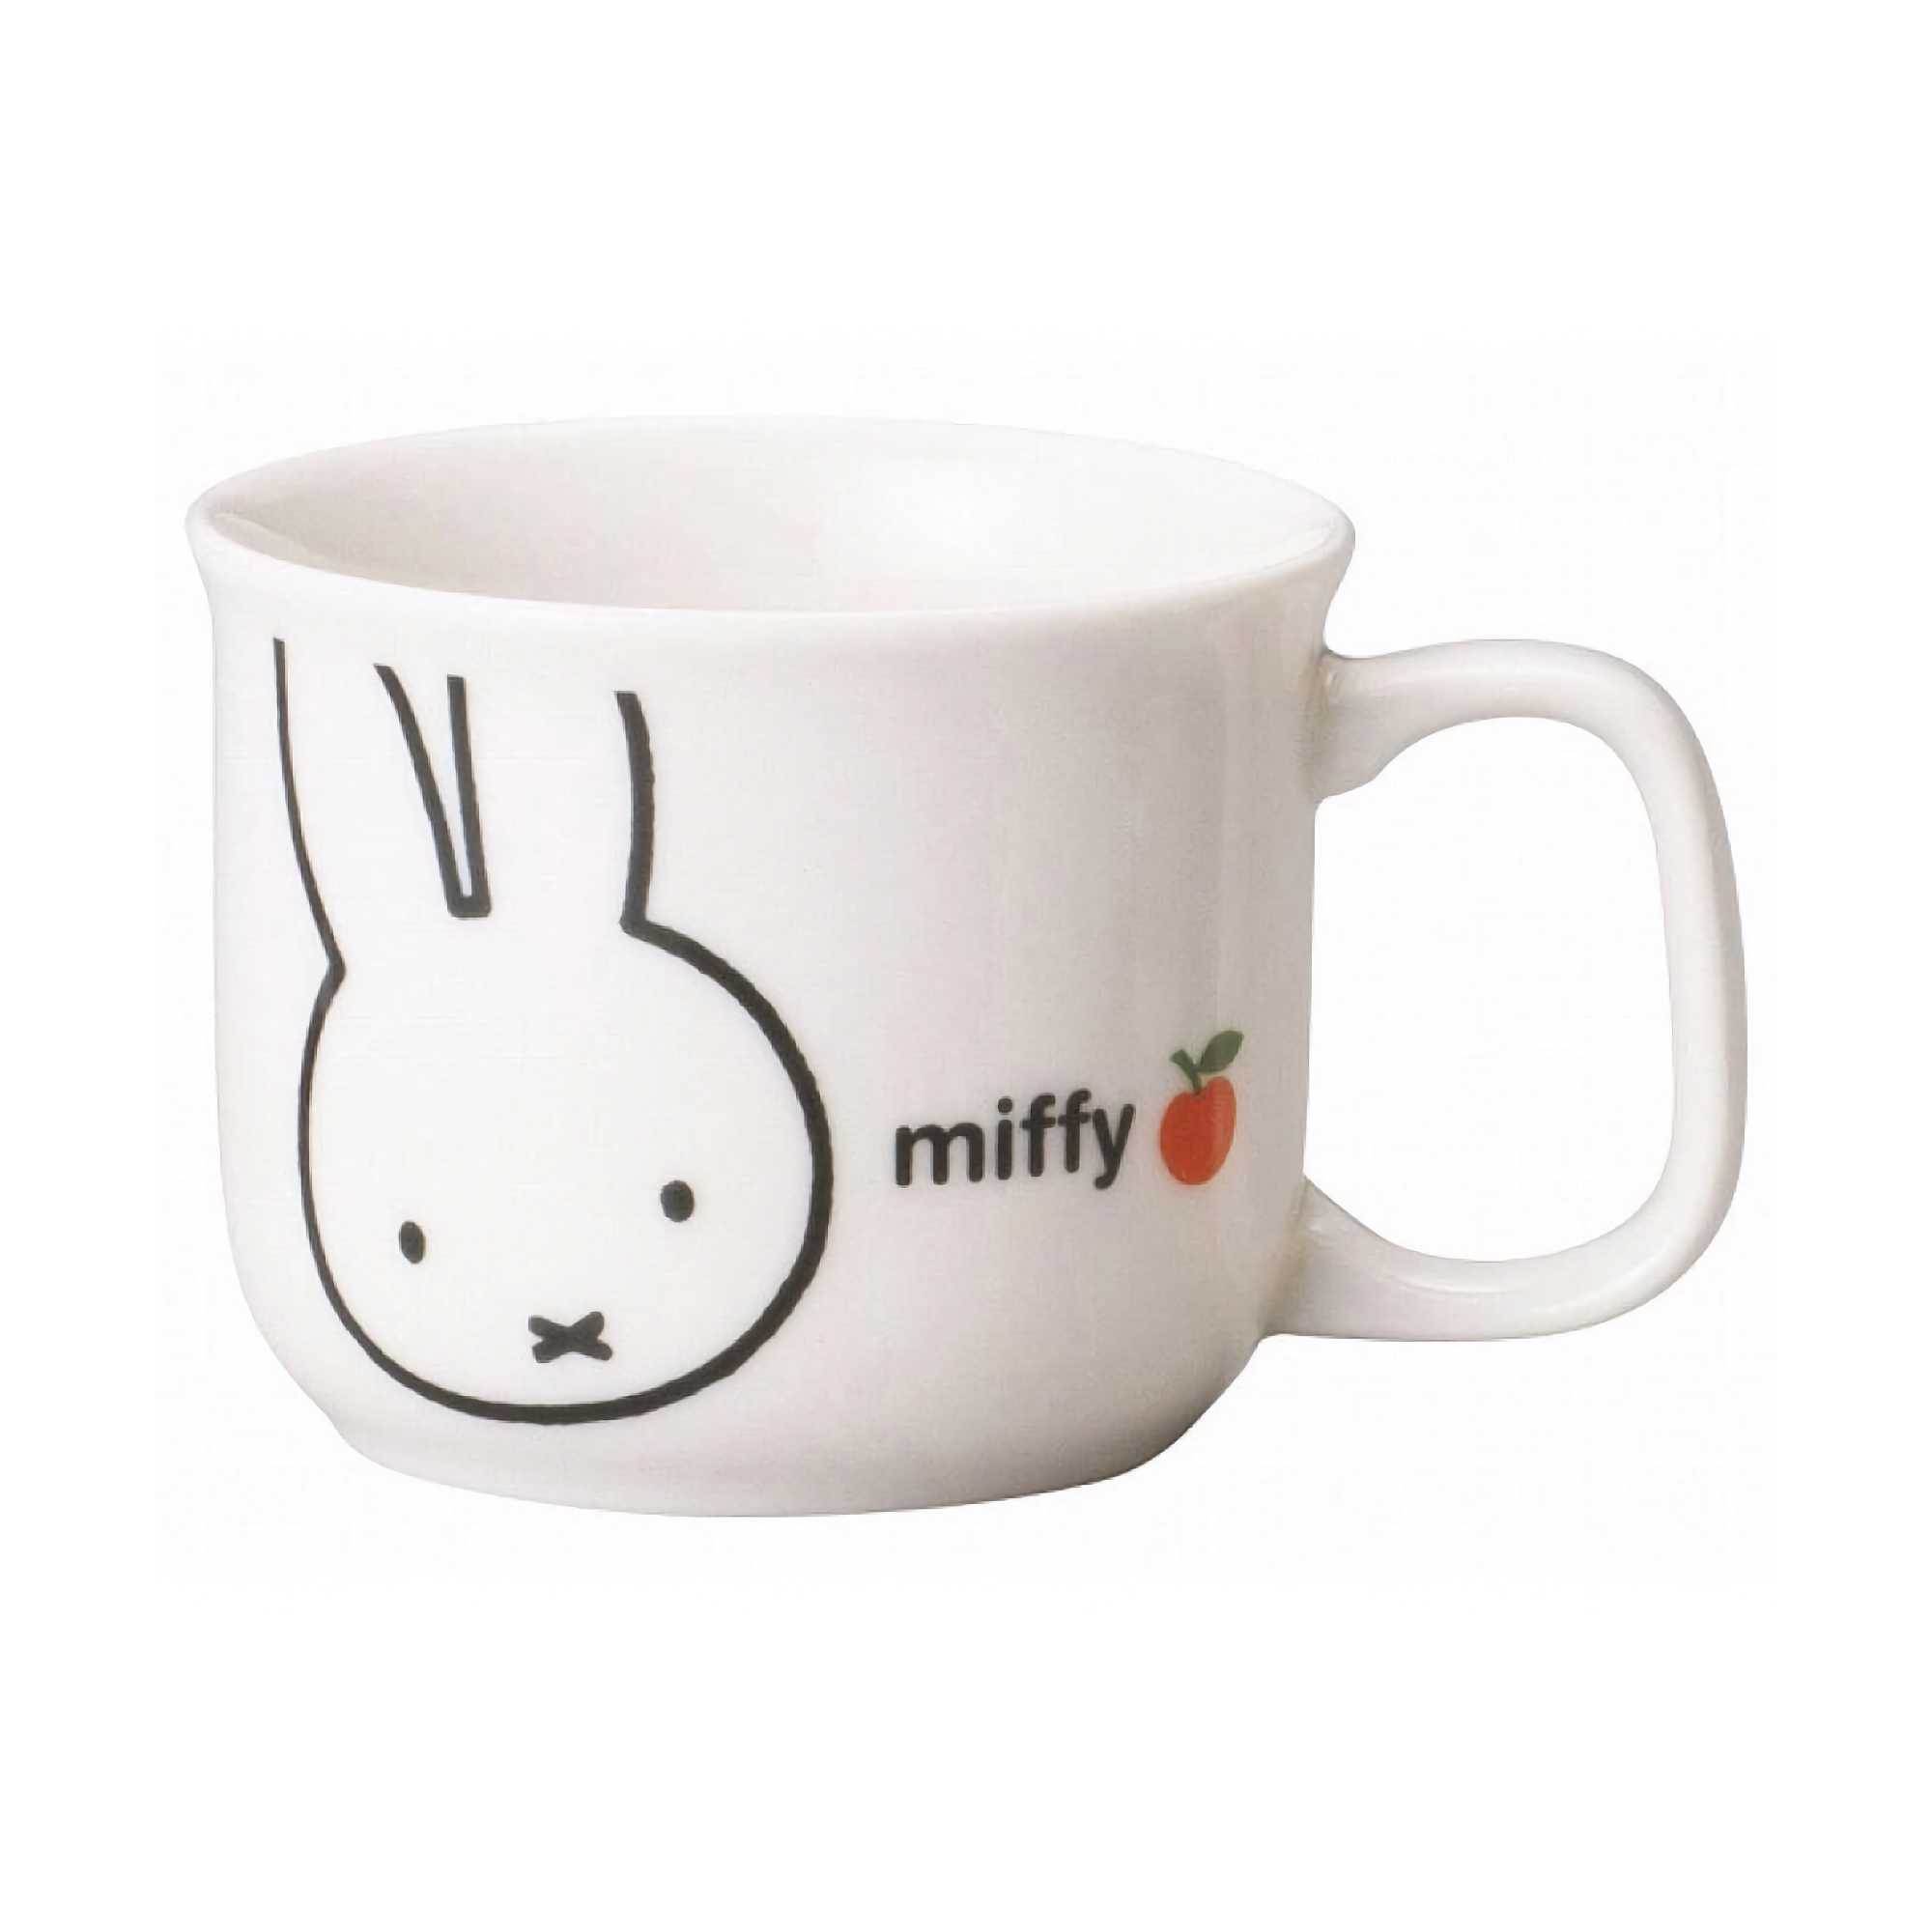 Miffy Apple Painted Children's Mug